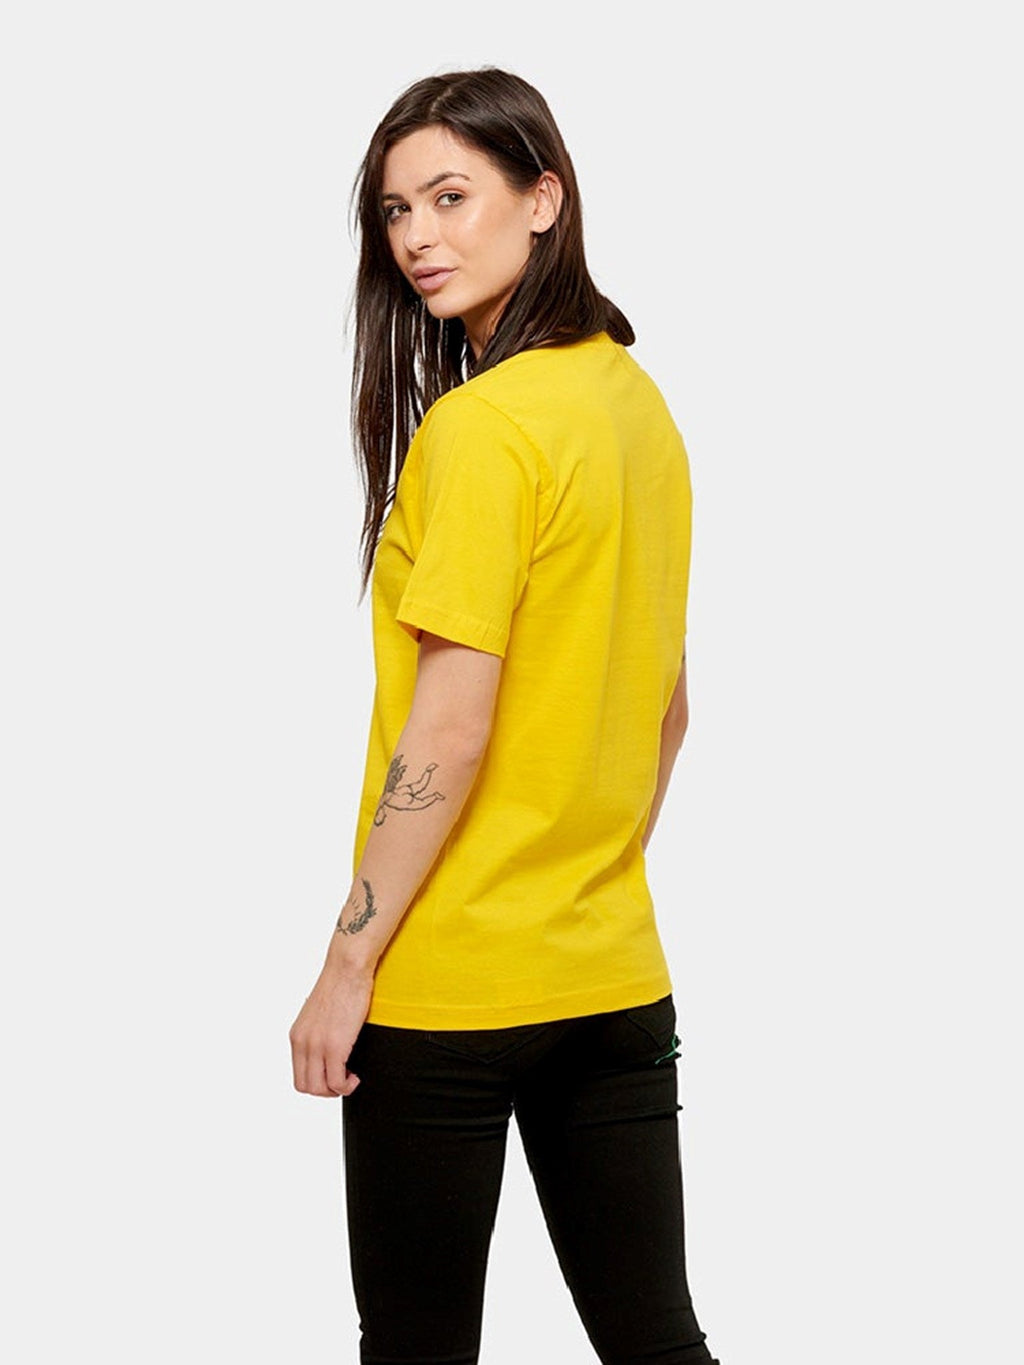 Nadmerné tričko - žltá